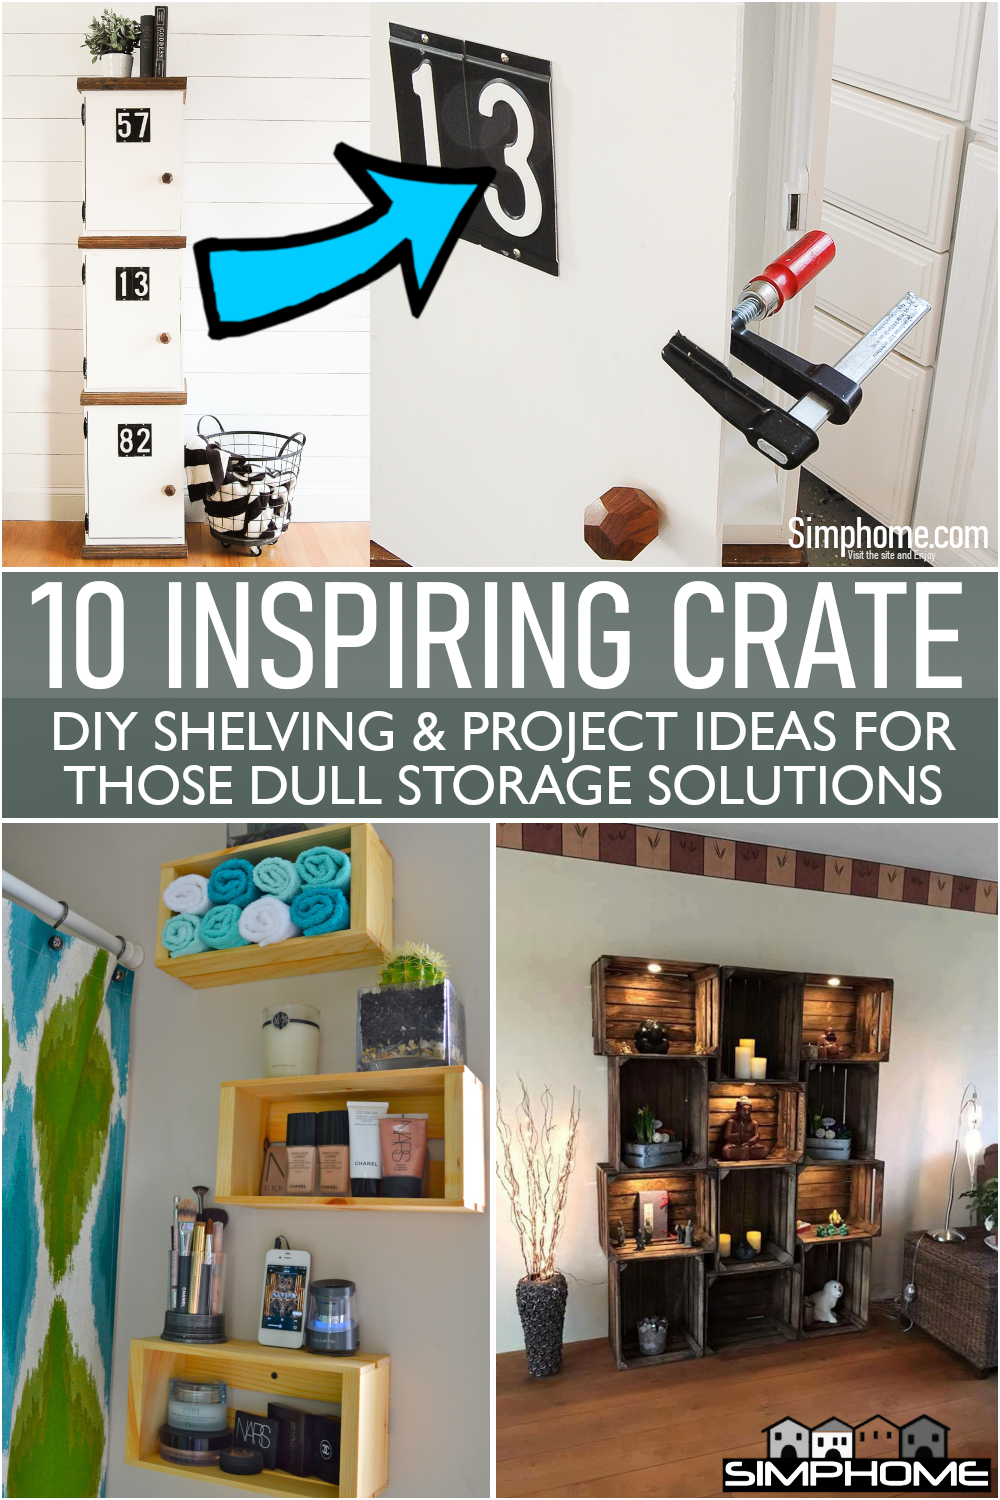 Get this 10 inspiring crate DIY shelving via Simphome.com